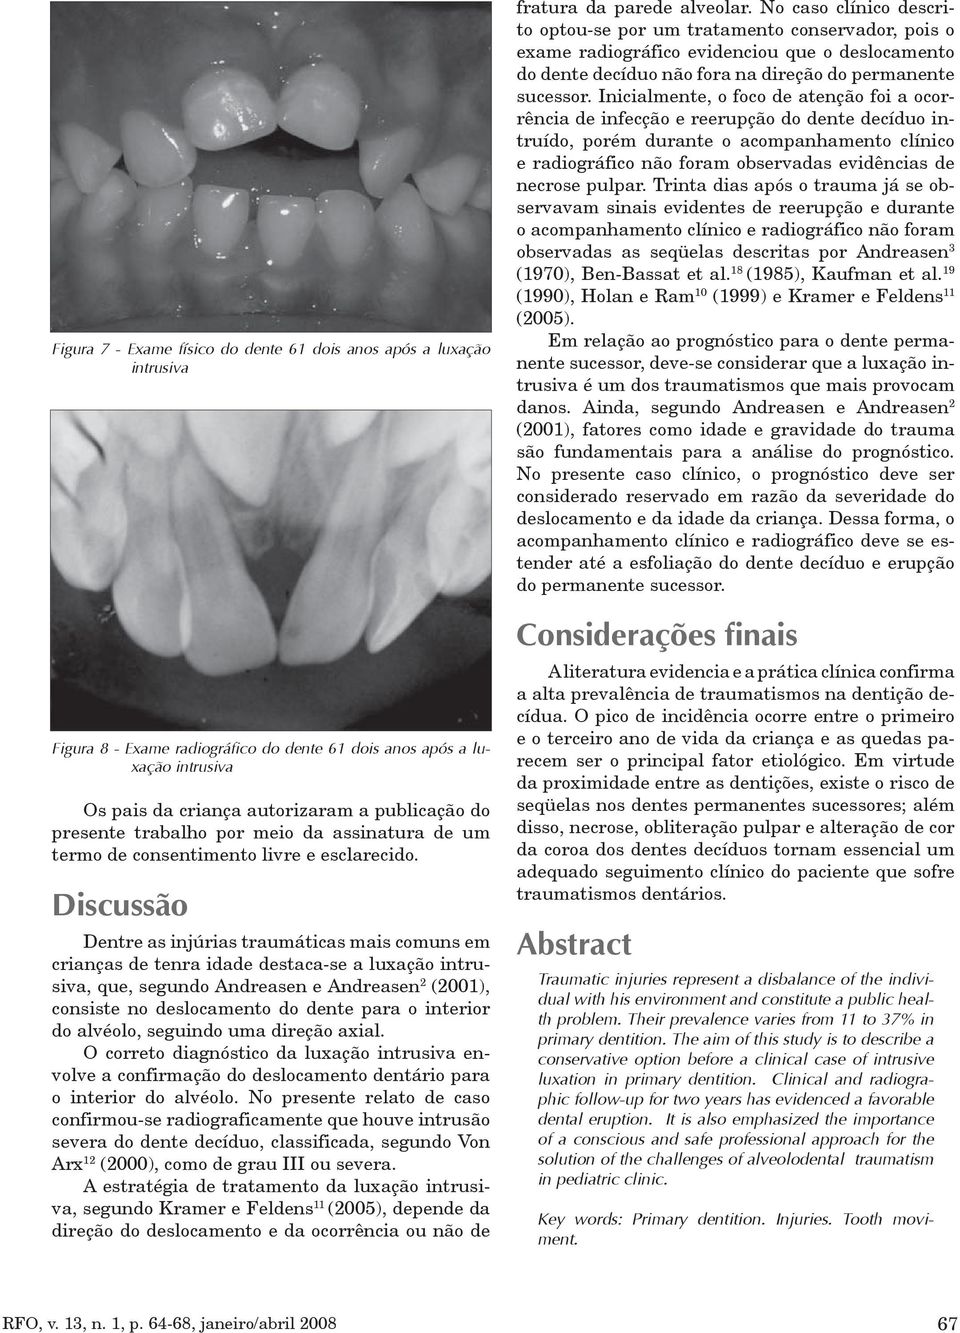 Discussão Dentre as injúrias traumáticas mais comuns em crianças de tenra idade destaca-se a luxação intrusiva, que, segundo Andreasen e Andreasen 2 (2001), consiste no deslocamento do dente para o